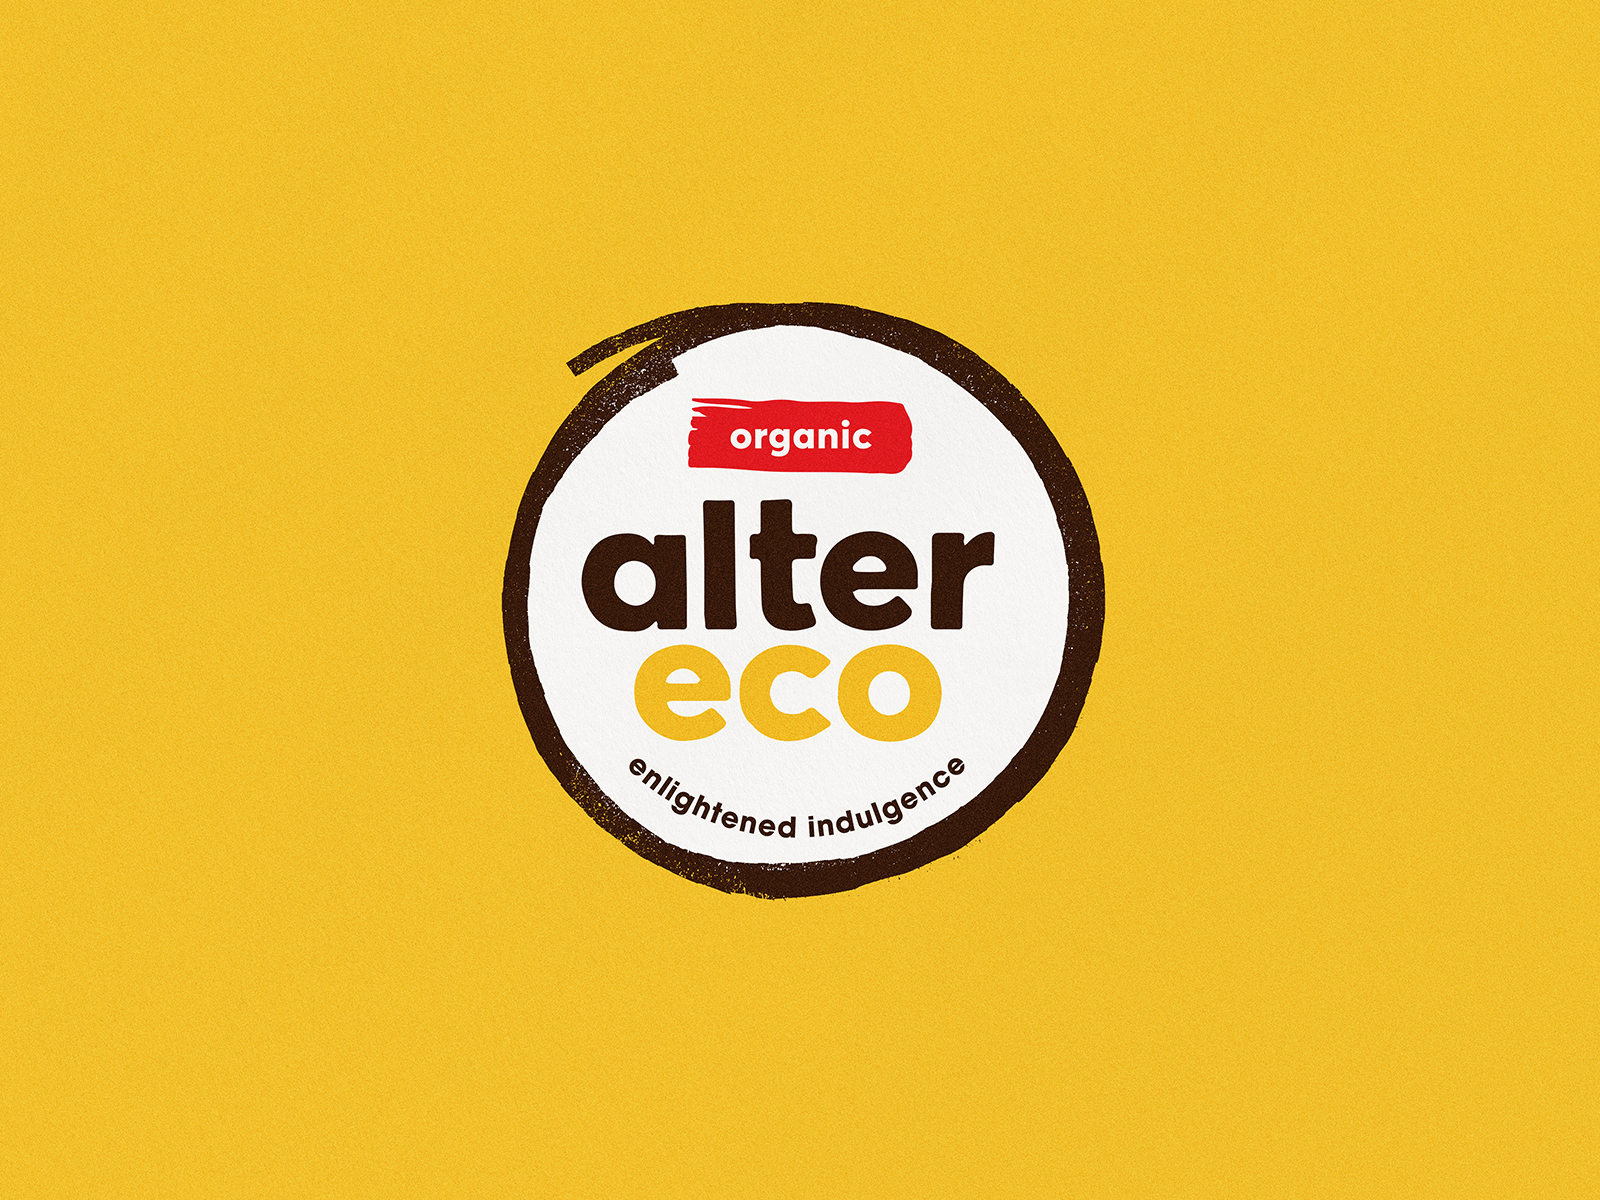 Alter Eco - Logo by Cory Uehara on Dribbble